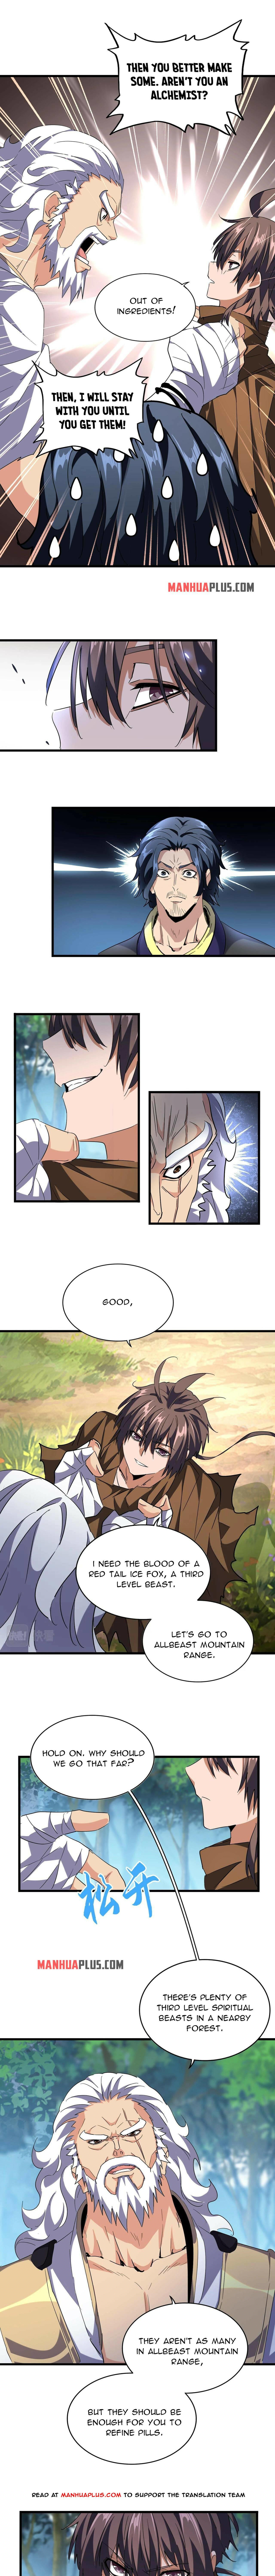 Magic Emperor Chapter 214 page 6 - Mangakakalot